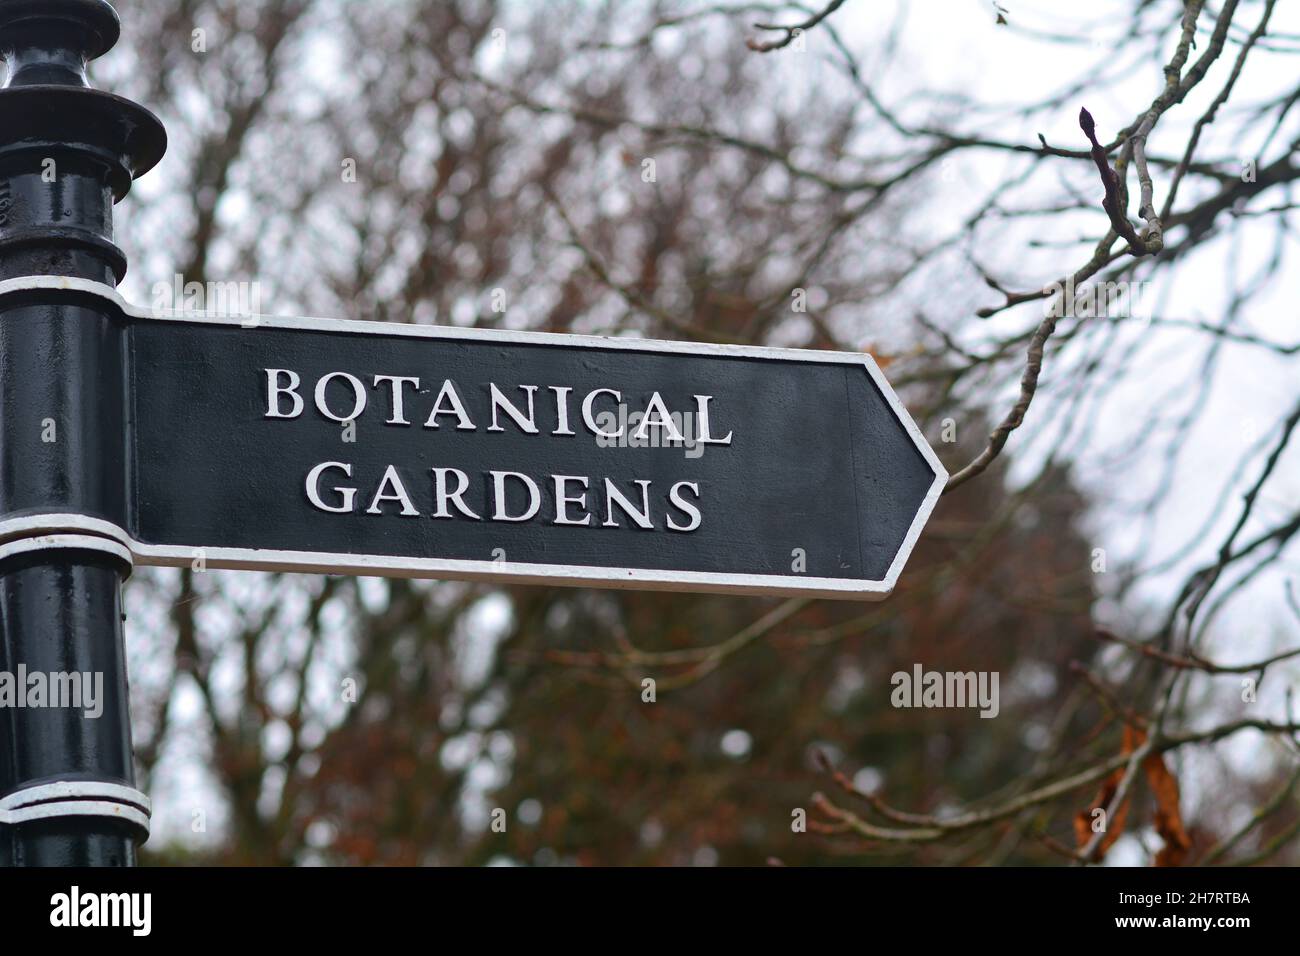 Le panneau Botanical Gardens à Bath Somerset Angleterre Royaume-Uni Banque D'Images